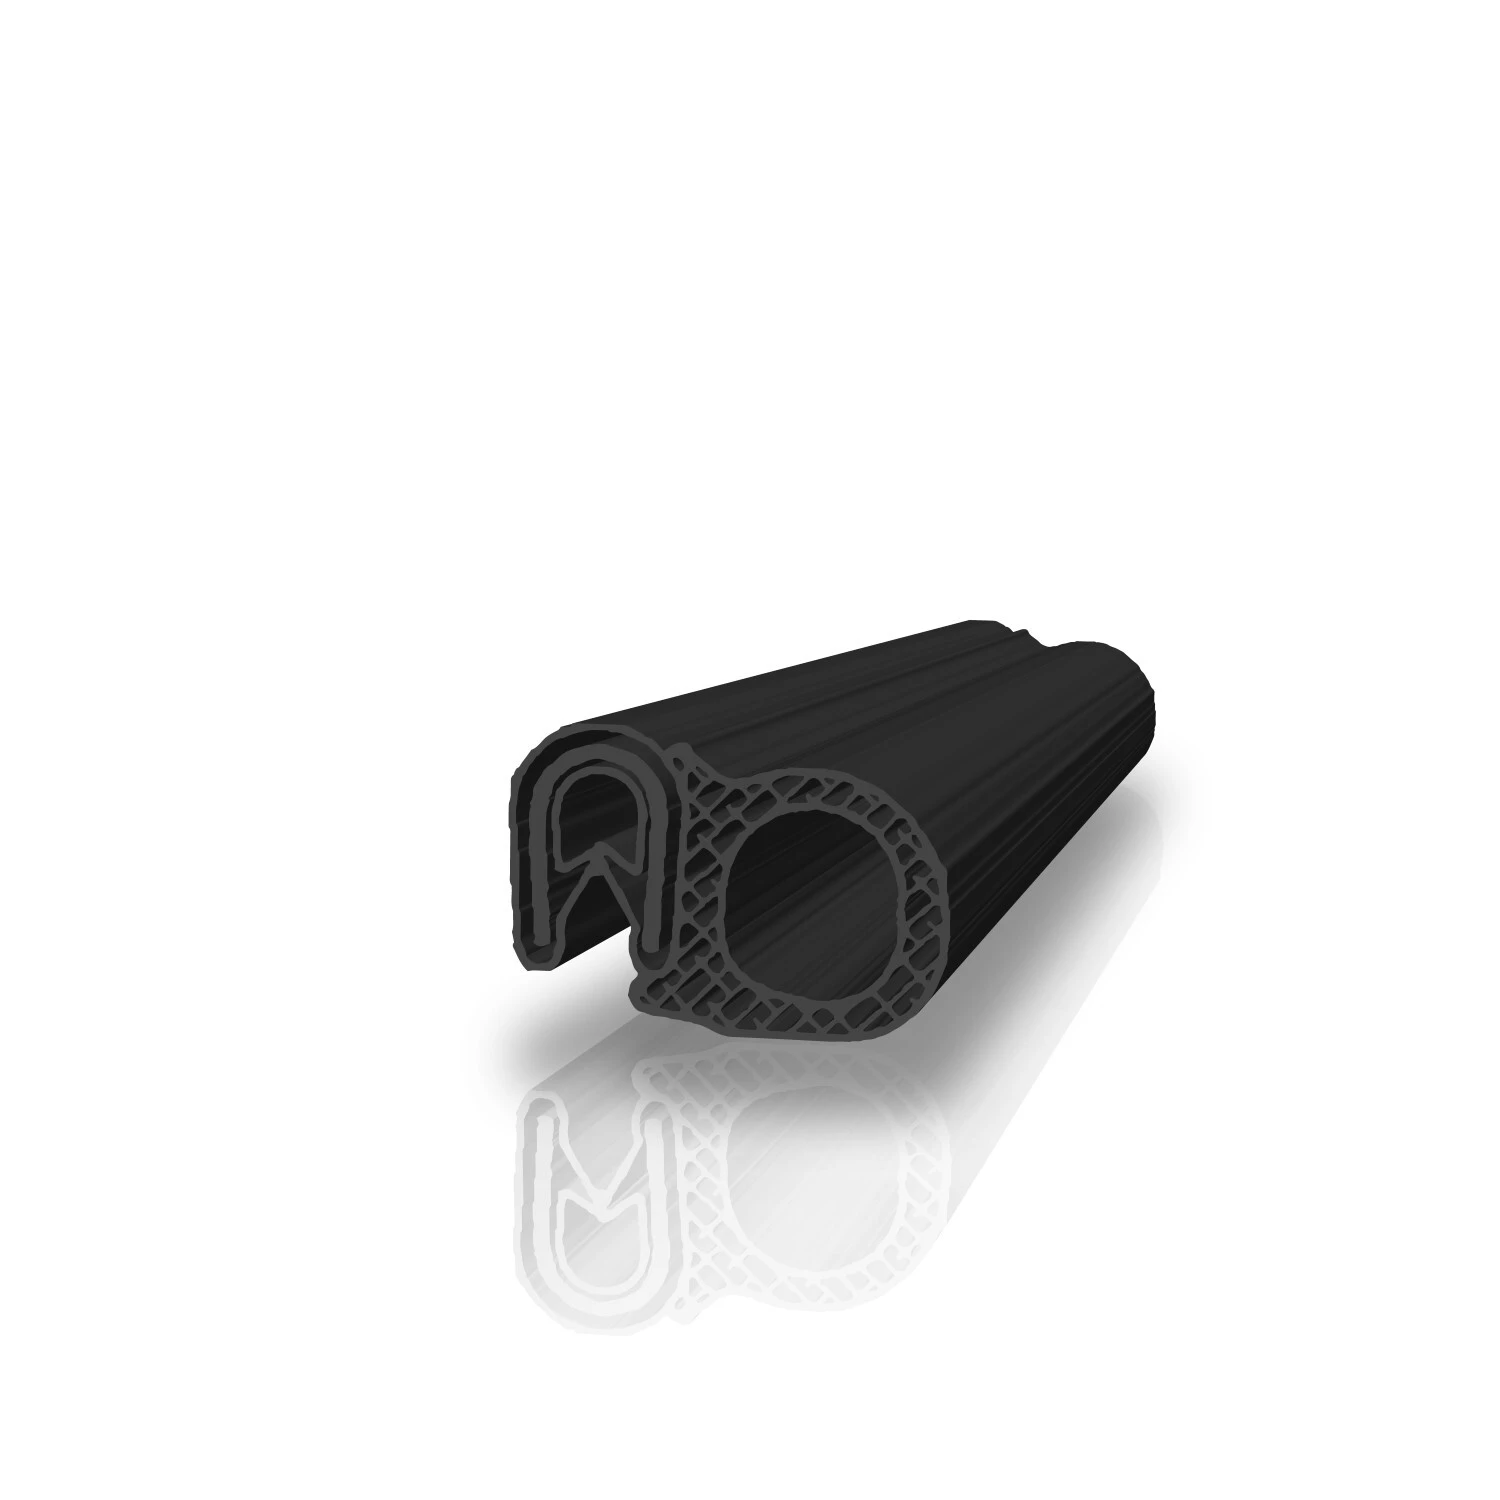 Kantenschutzprofil mit Moosgummi Klemmbereich 1-4 mm in schwarz